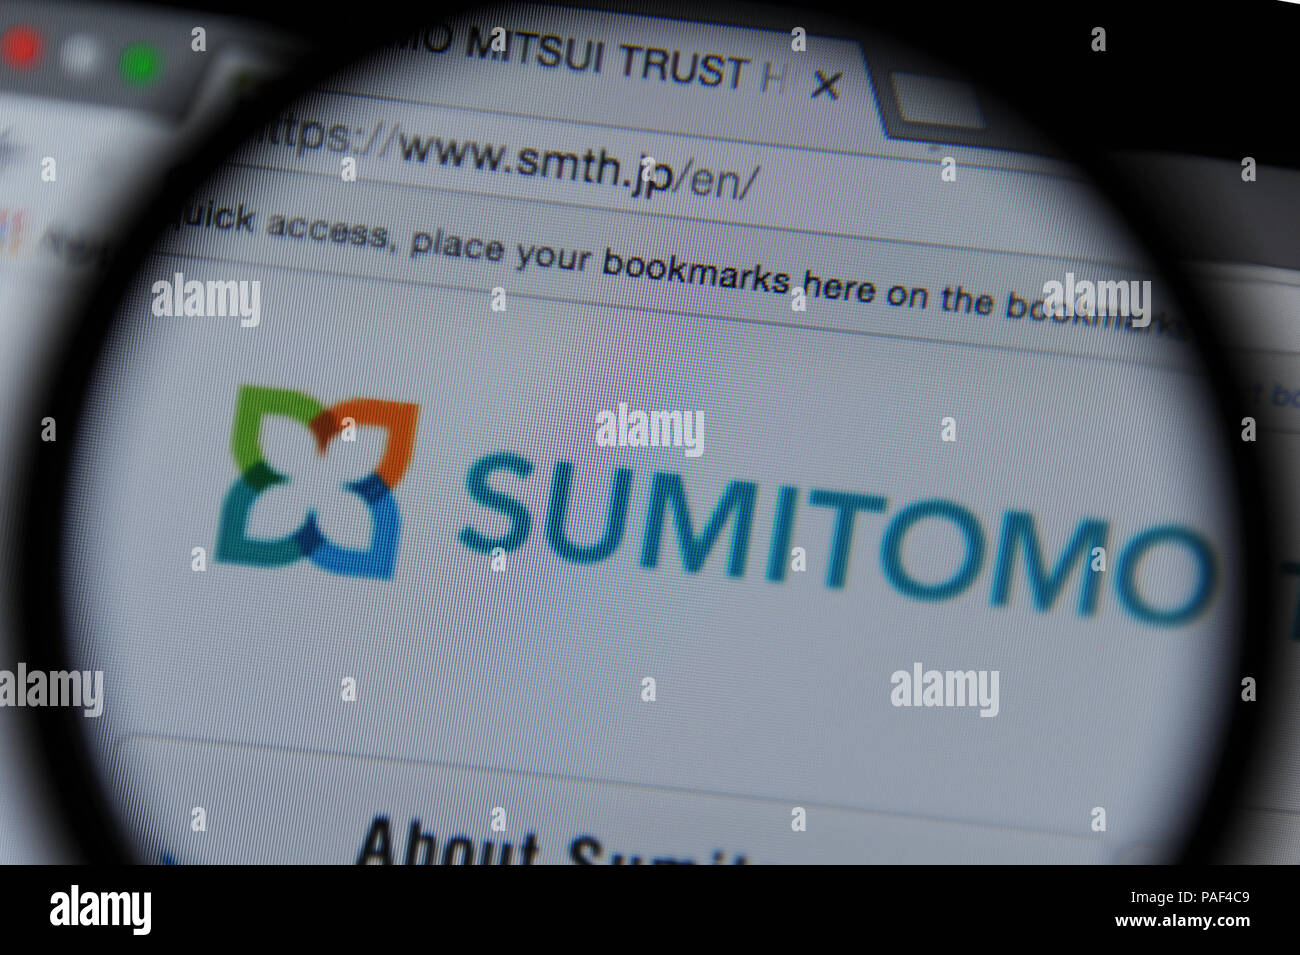 Le site web de Sumitomo vu à travers une loupe Banque D'Images